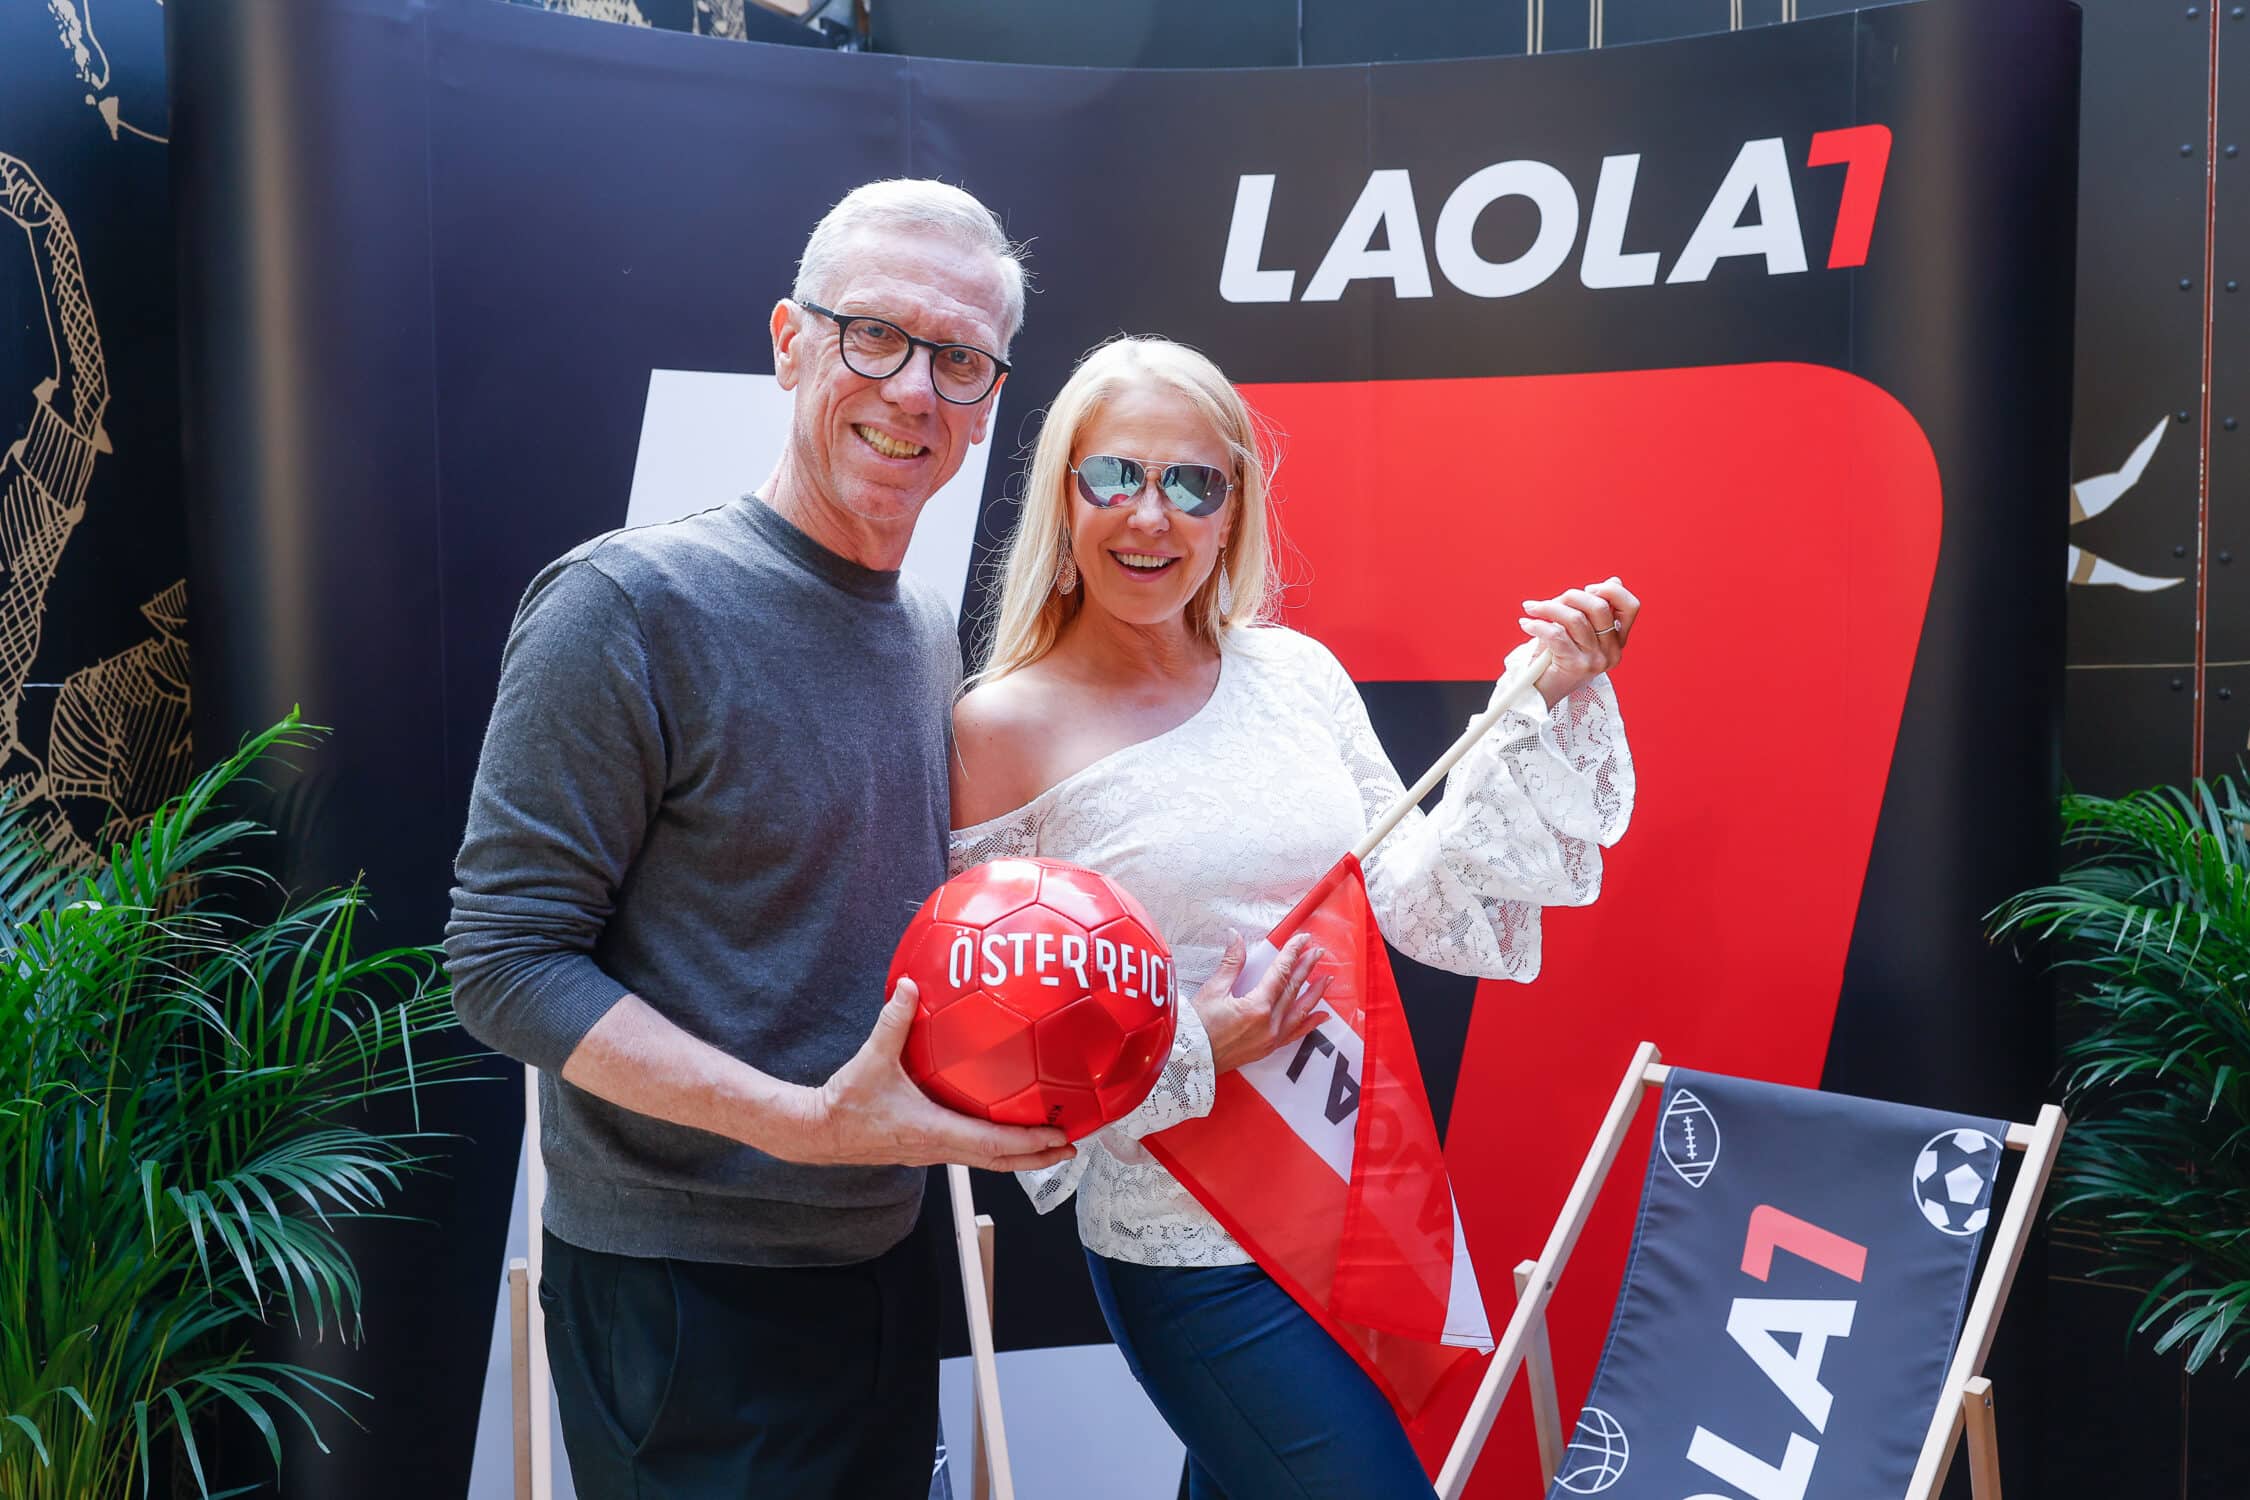 EURO 2024: LAOLA1 VIP-Manege lockte Prominente zum exklusiven Networking-Event in den Wiener Prater [Klub 100]